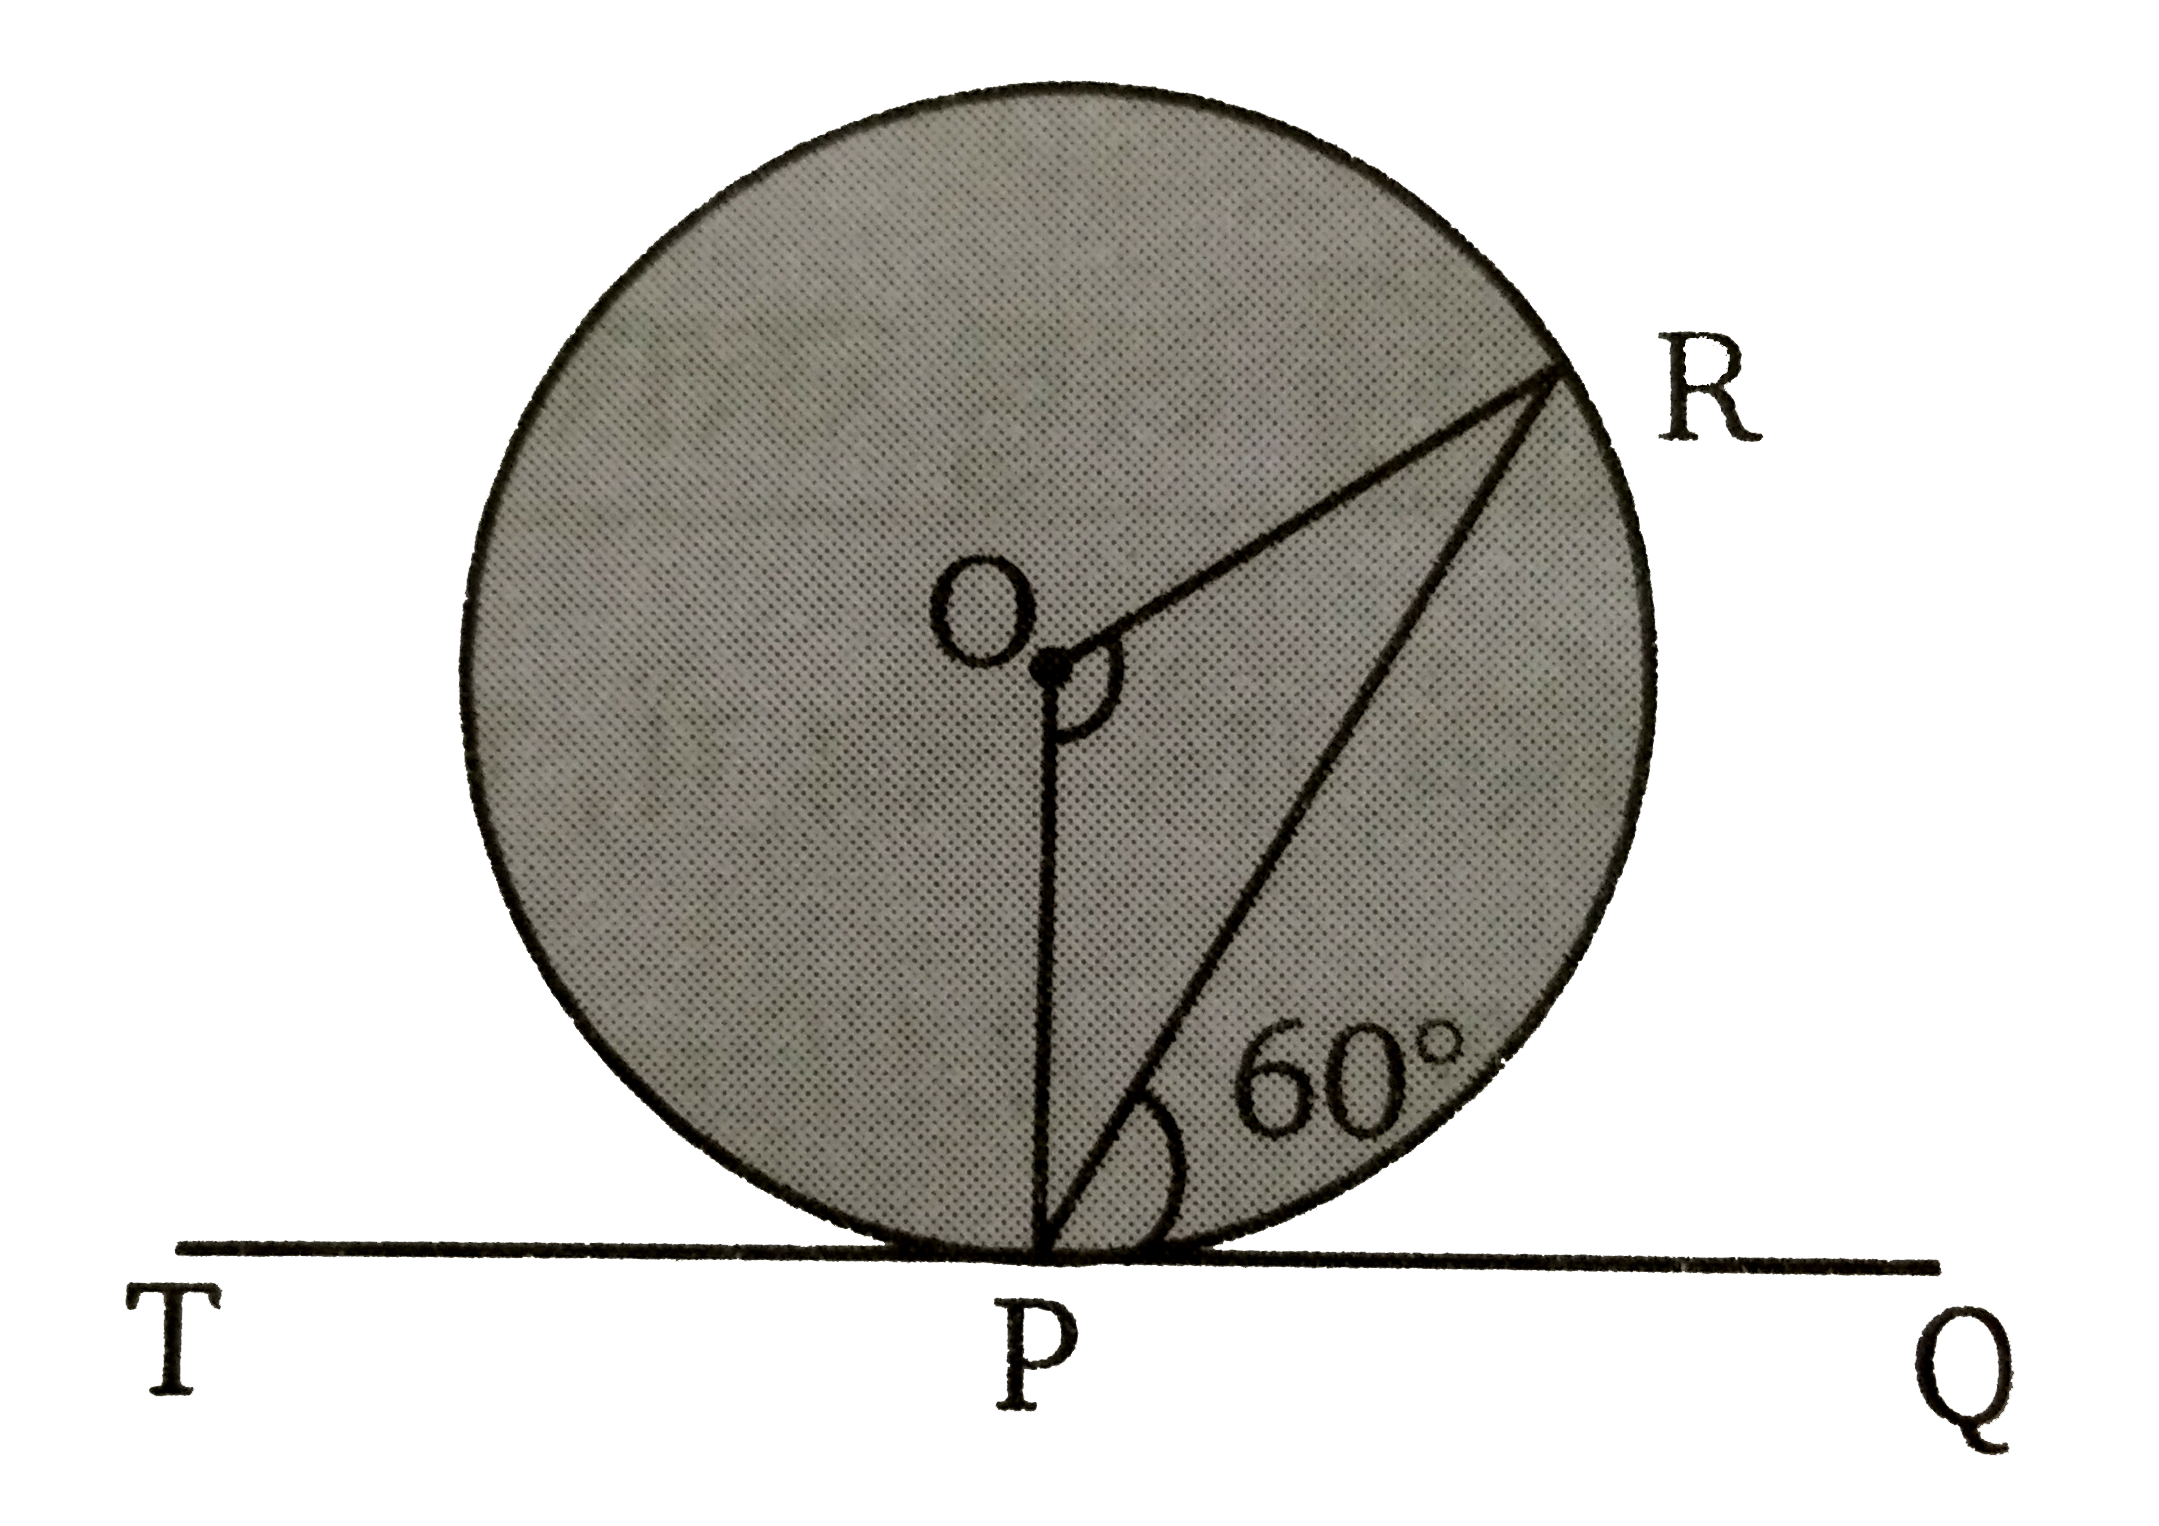 चित्र में,  O  वृत्त का केन्द्र है और TPQ  इसकी स्पर्श रेखा है। यदि angle RPQ = 60^(@)   है तो  anglePOR  का मान ज्ञात कीजिए ।